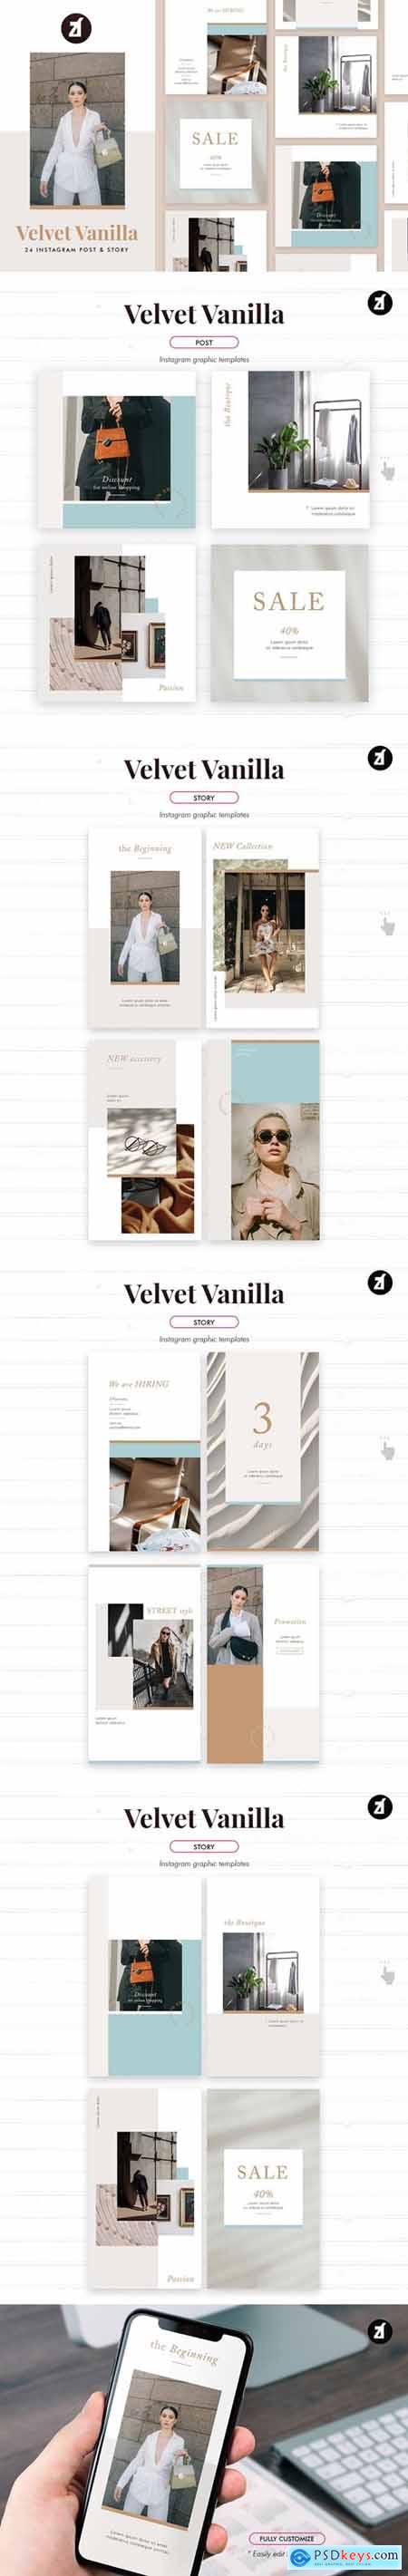 Velvet vanilla social media graphic templates